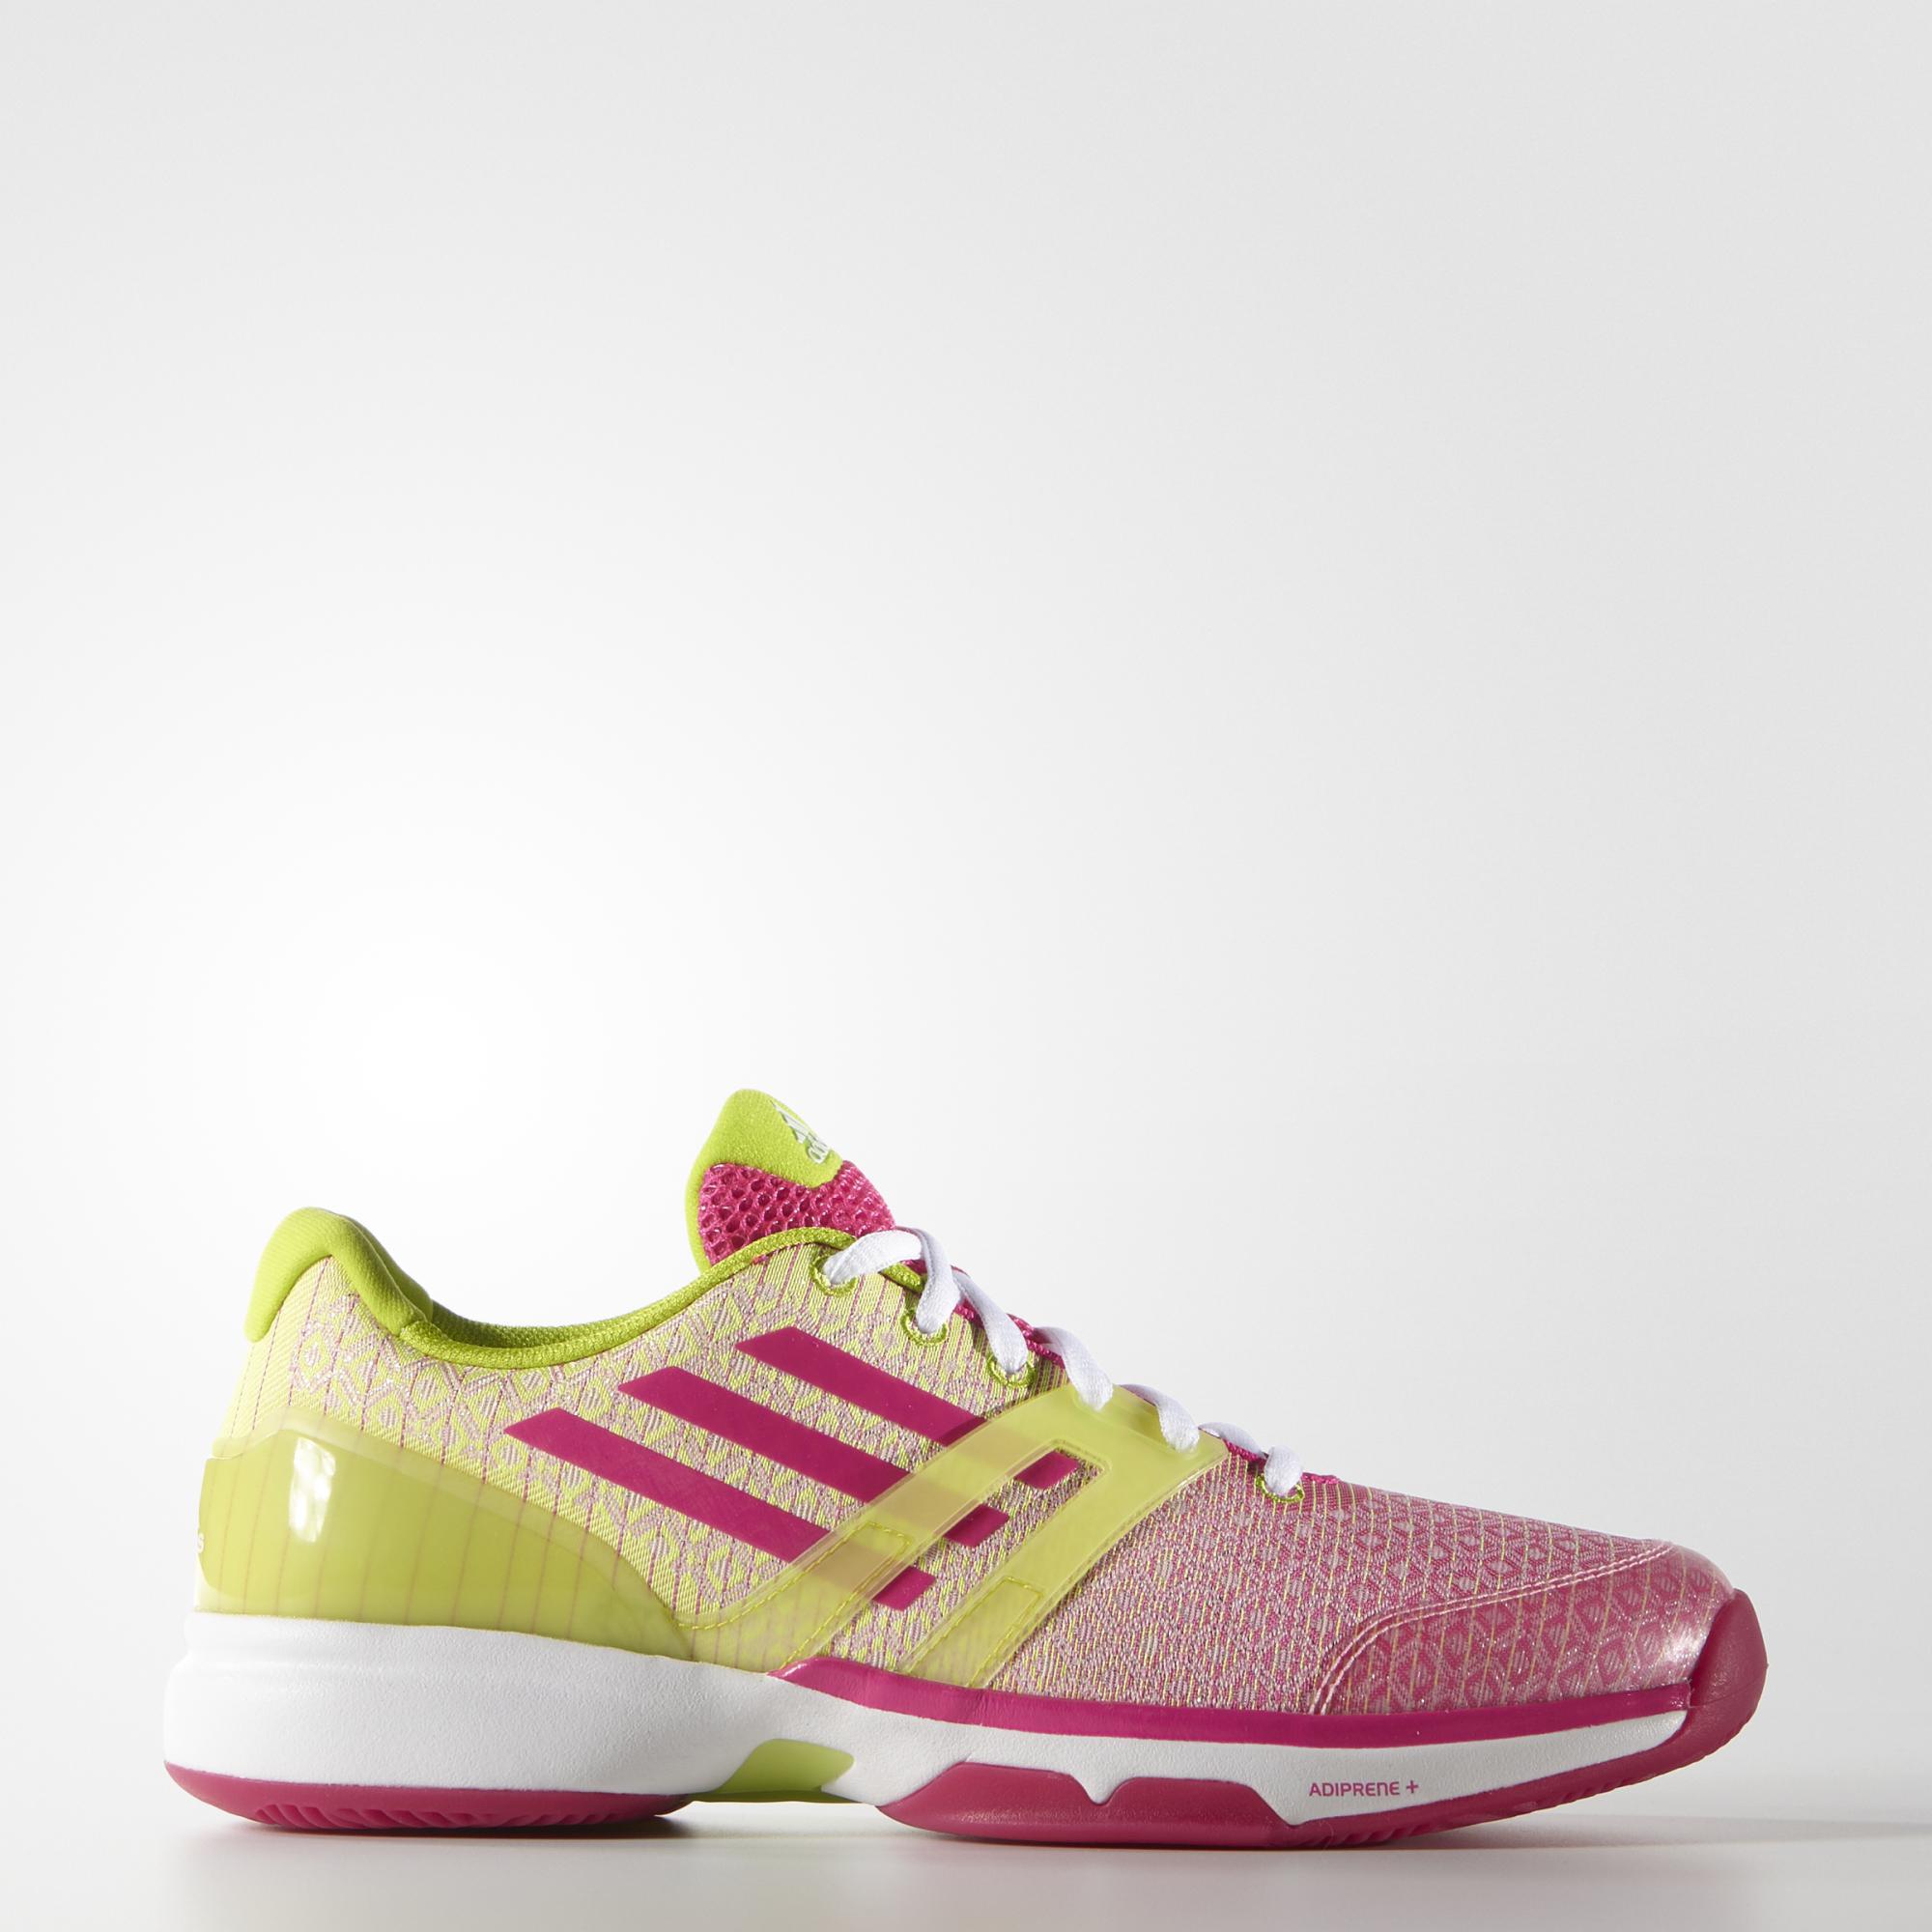 Adidas Womens Adizero Ubersonic Tennis Shoes - Green/Pink - Tennisnuts.com